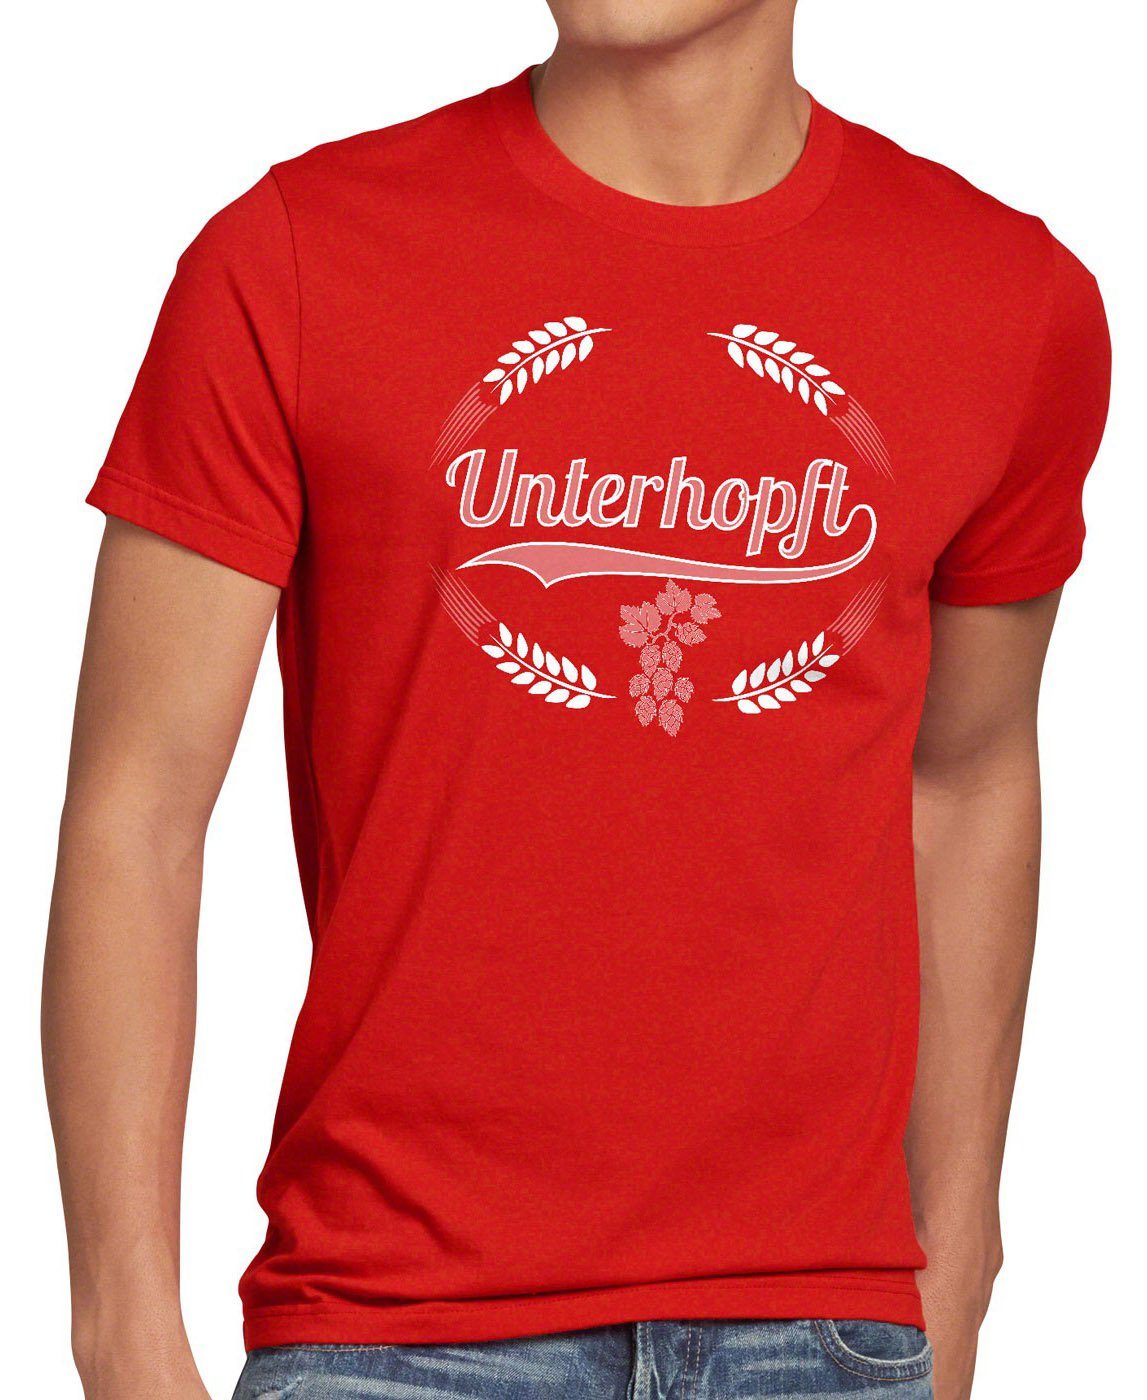 style3 Print-Shirt Herren Hopfen rot Unterhopft Malz Fest Fun Funshirt T-Shirt Kult Spruch Bier Shirt